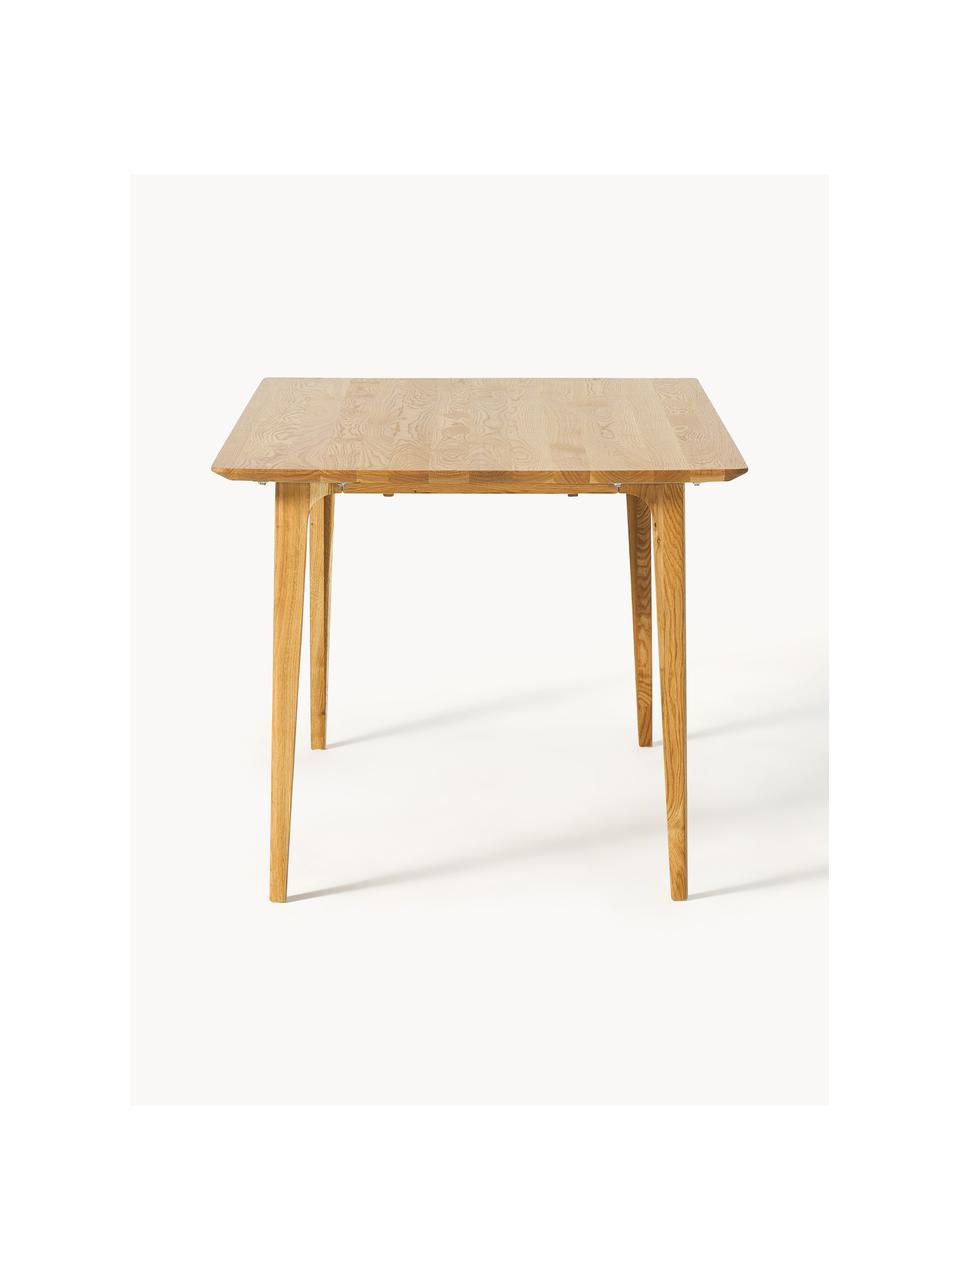 Jídelní stůl z dubového dřeva Archie, různé velikosti, Masivní dubové dřevo, olejované

Tento produkt je vyroben z udržitelných zdrojů dřeva s certifikací FSC®., Olejované dubové dřevo, Š 180 cm, H 90 cm